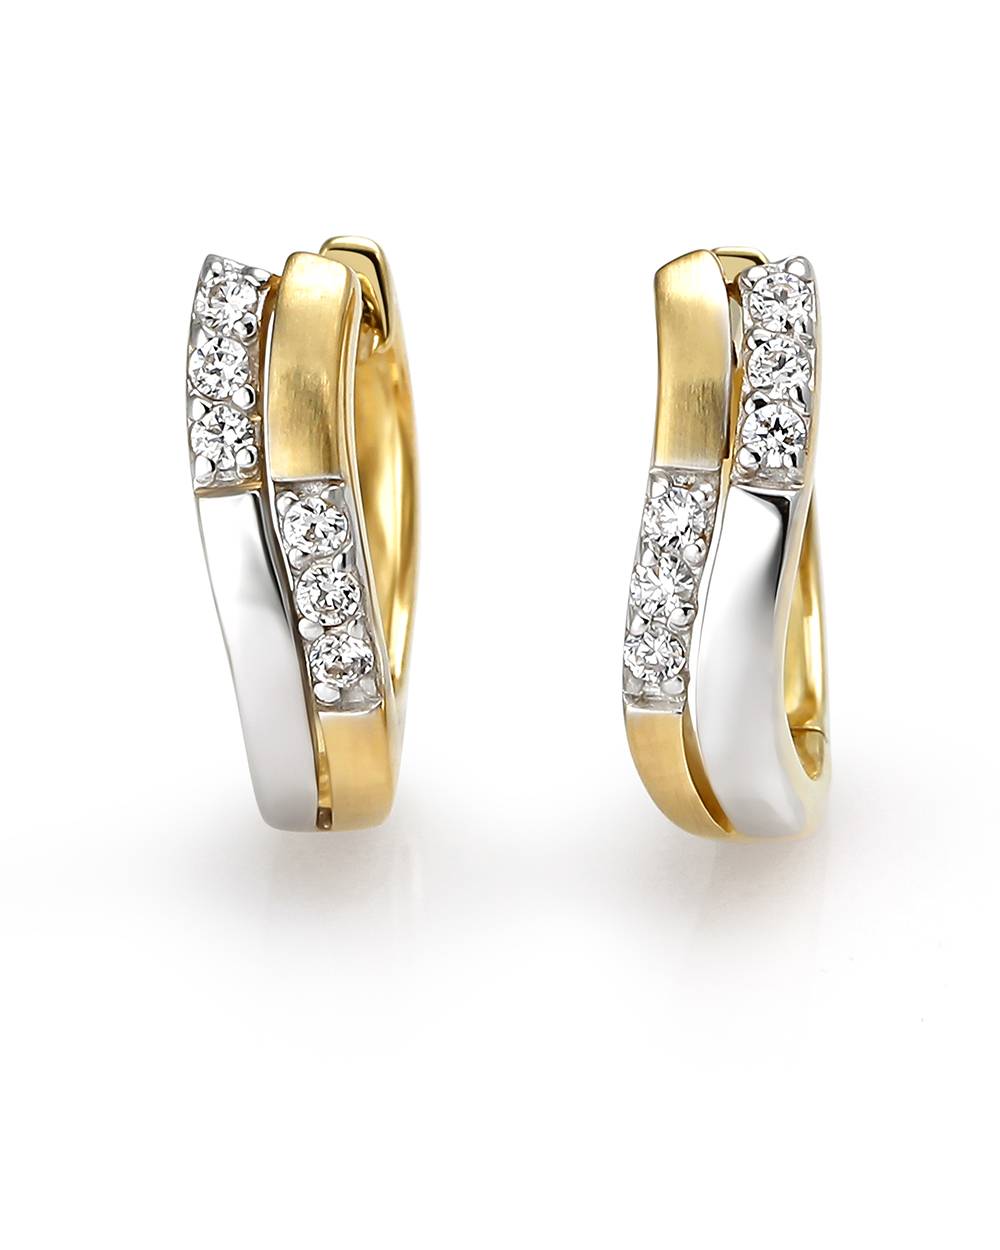 Earrings huggies sterling silver gold cubic zirconias